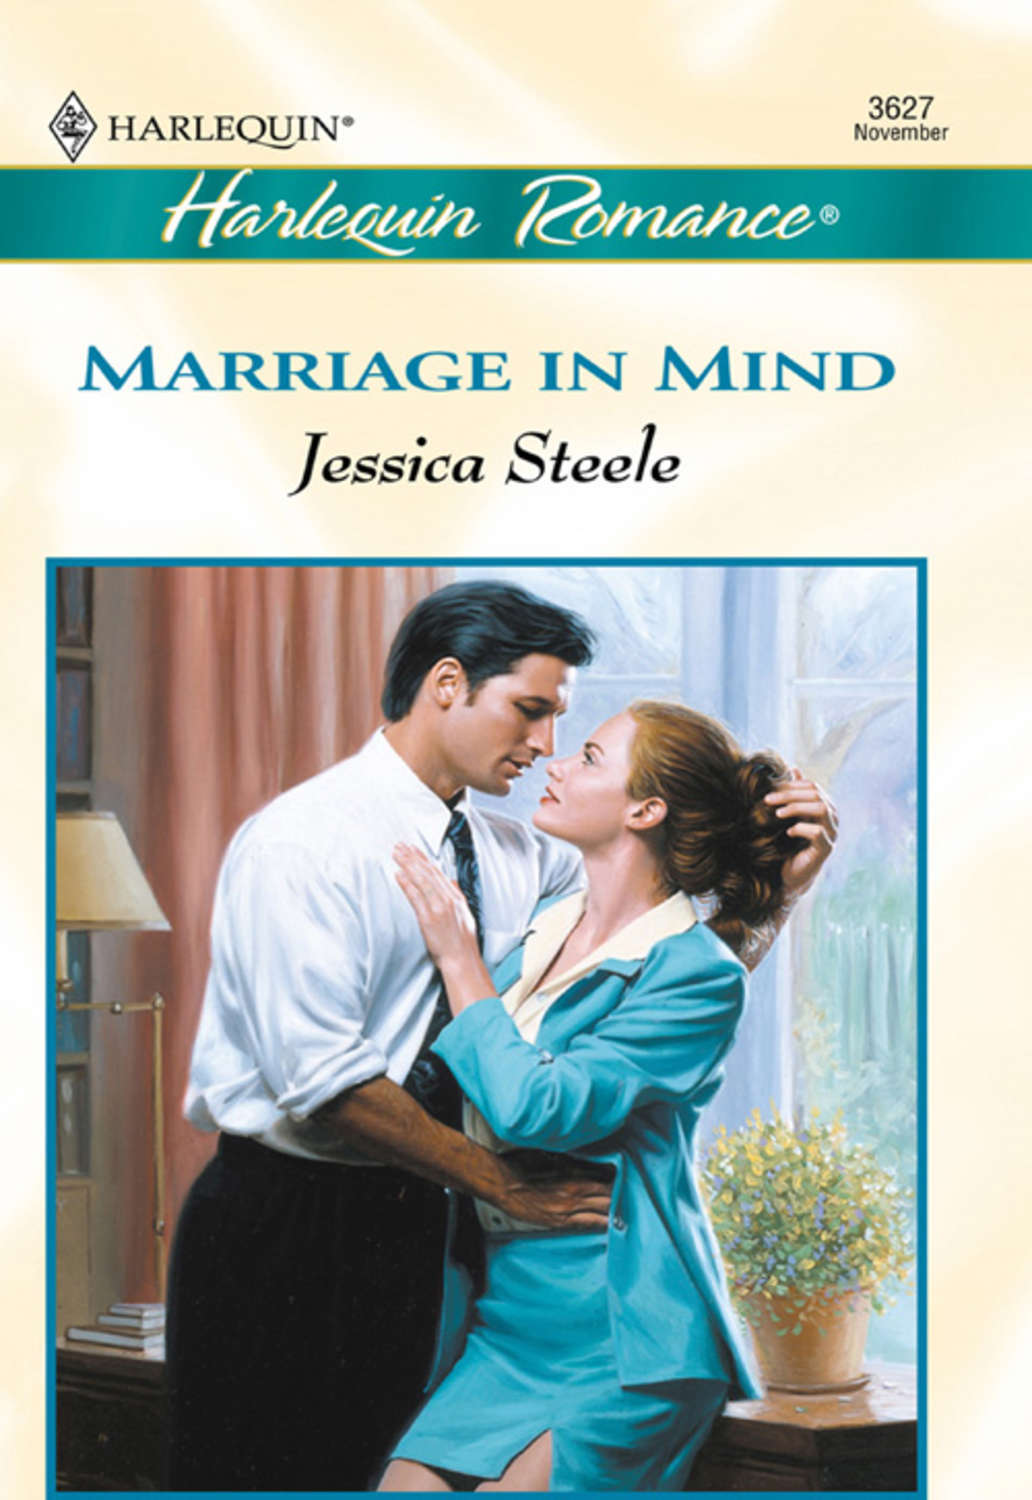 Читать книги про брак. Jessica Mind. Minded marriage. Jessica Steele's. Тайны семейные и любовные Сьюзен Кросби Озон.